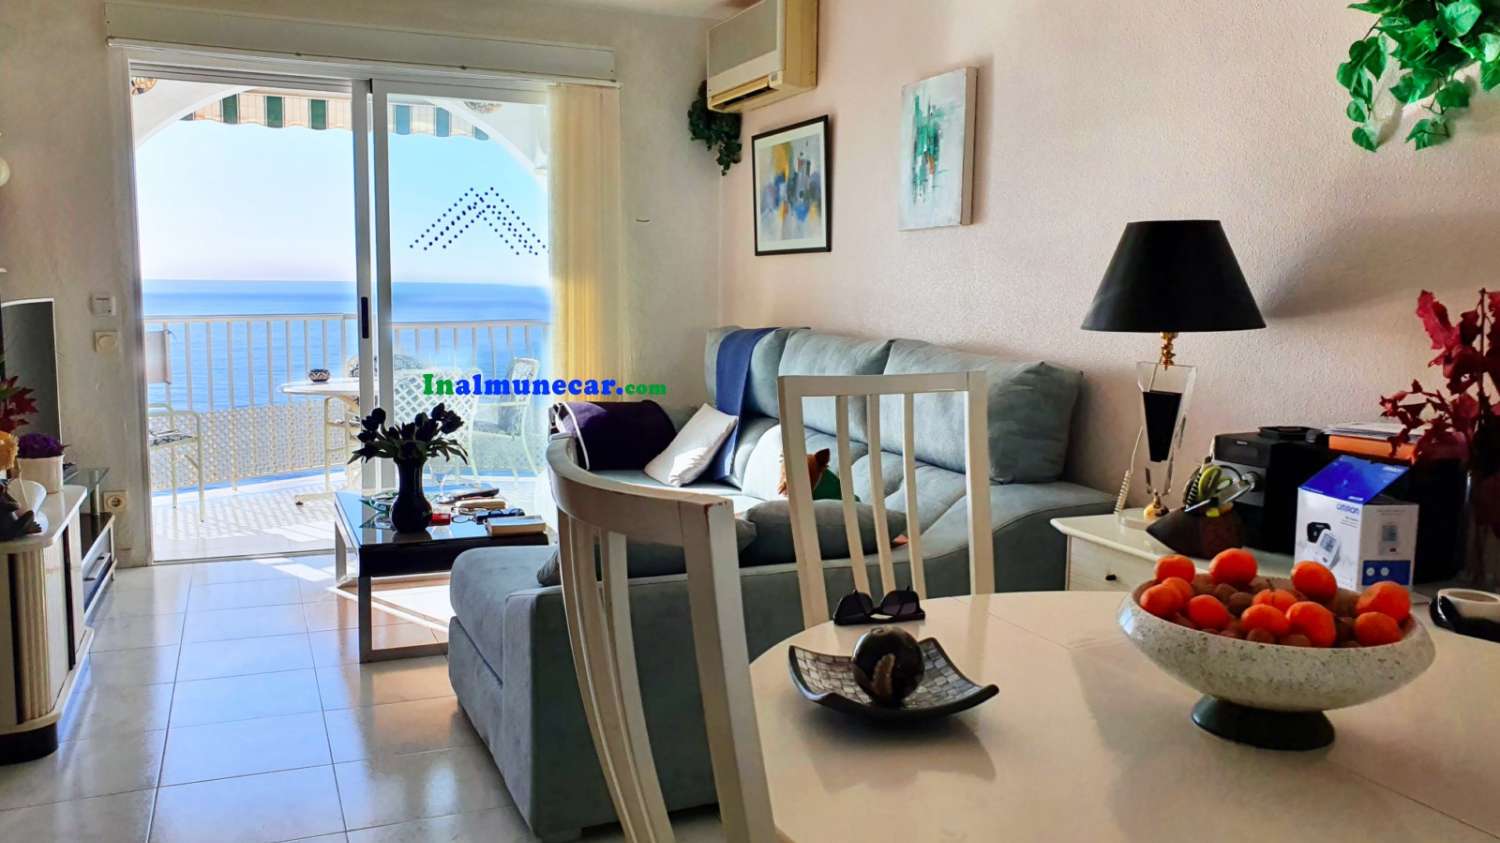 Wohnung mit Parkplatz zum Verkauf direkt am Strand, Paseo de Cotobro, Almuñécar, Costa Tropical.